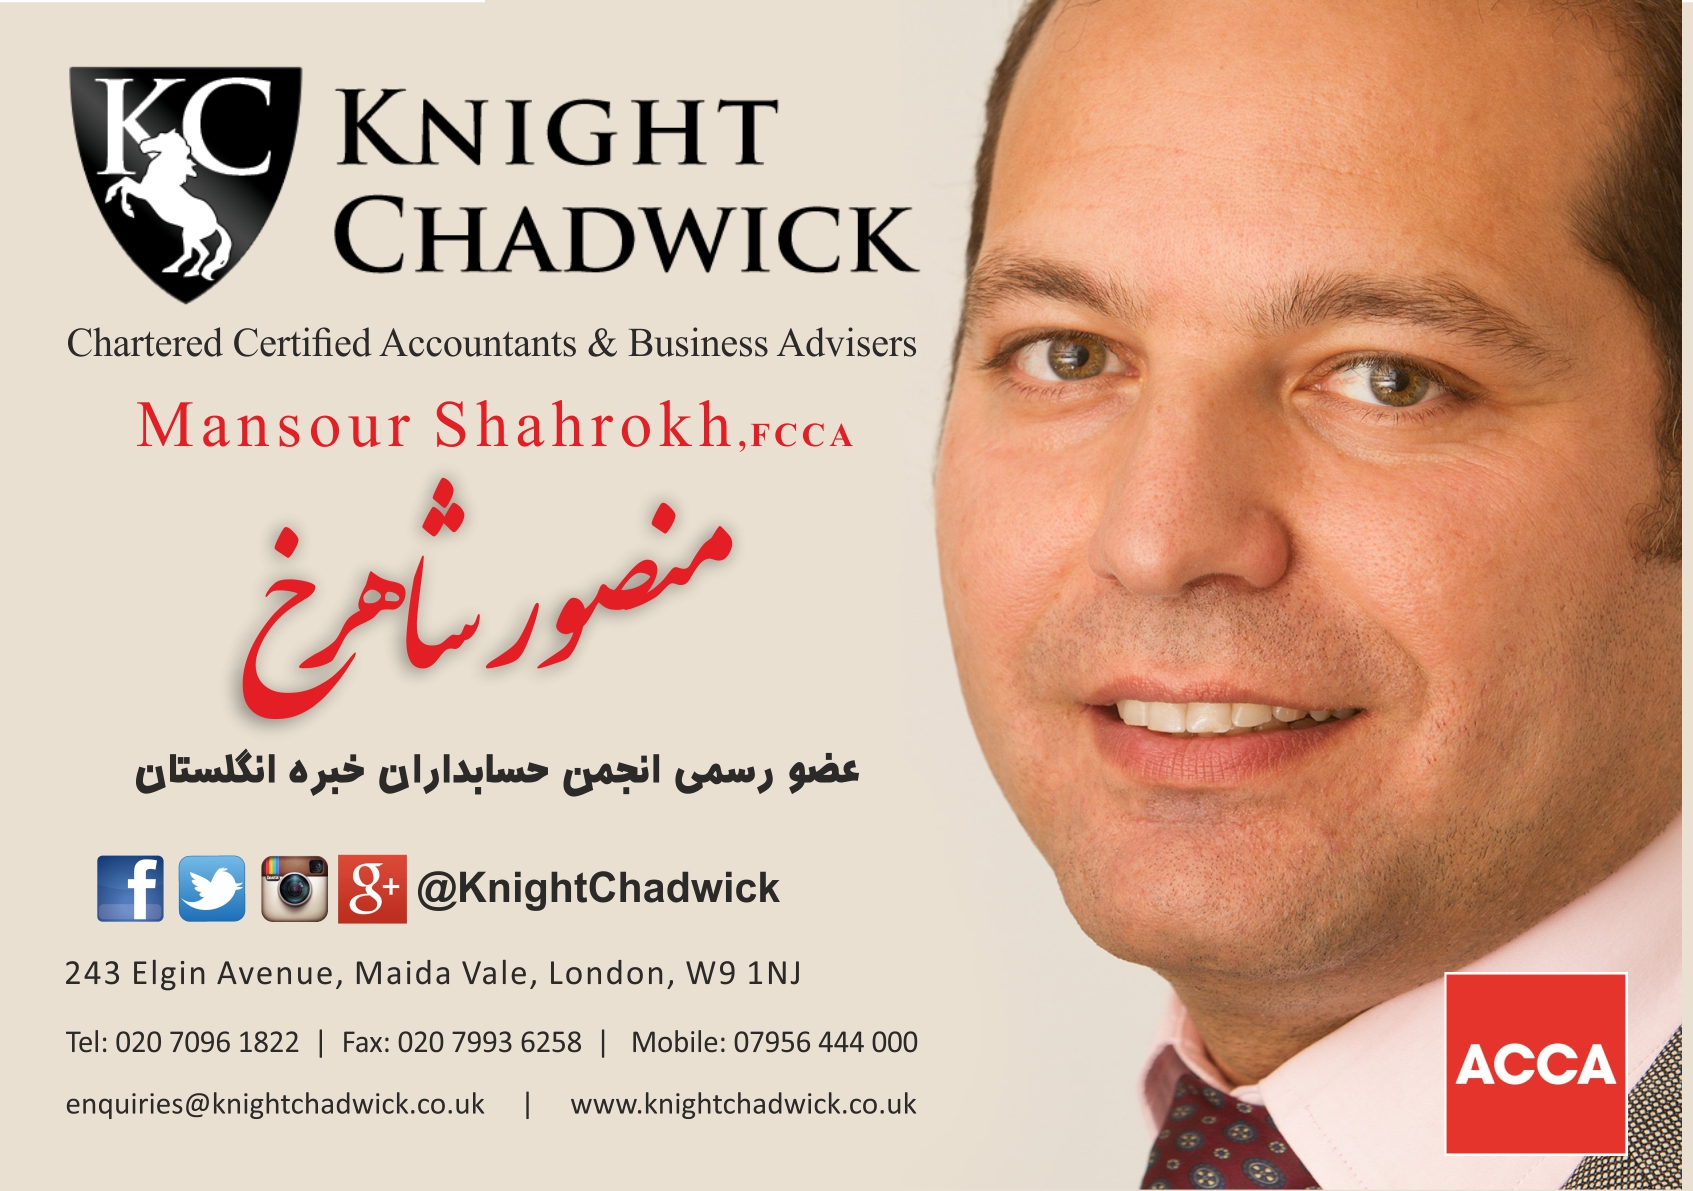 Knight Chadwick